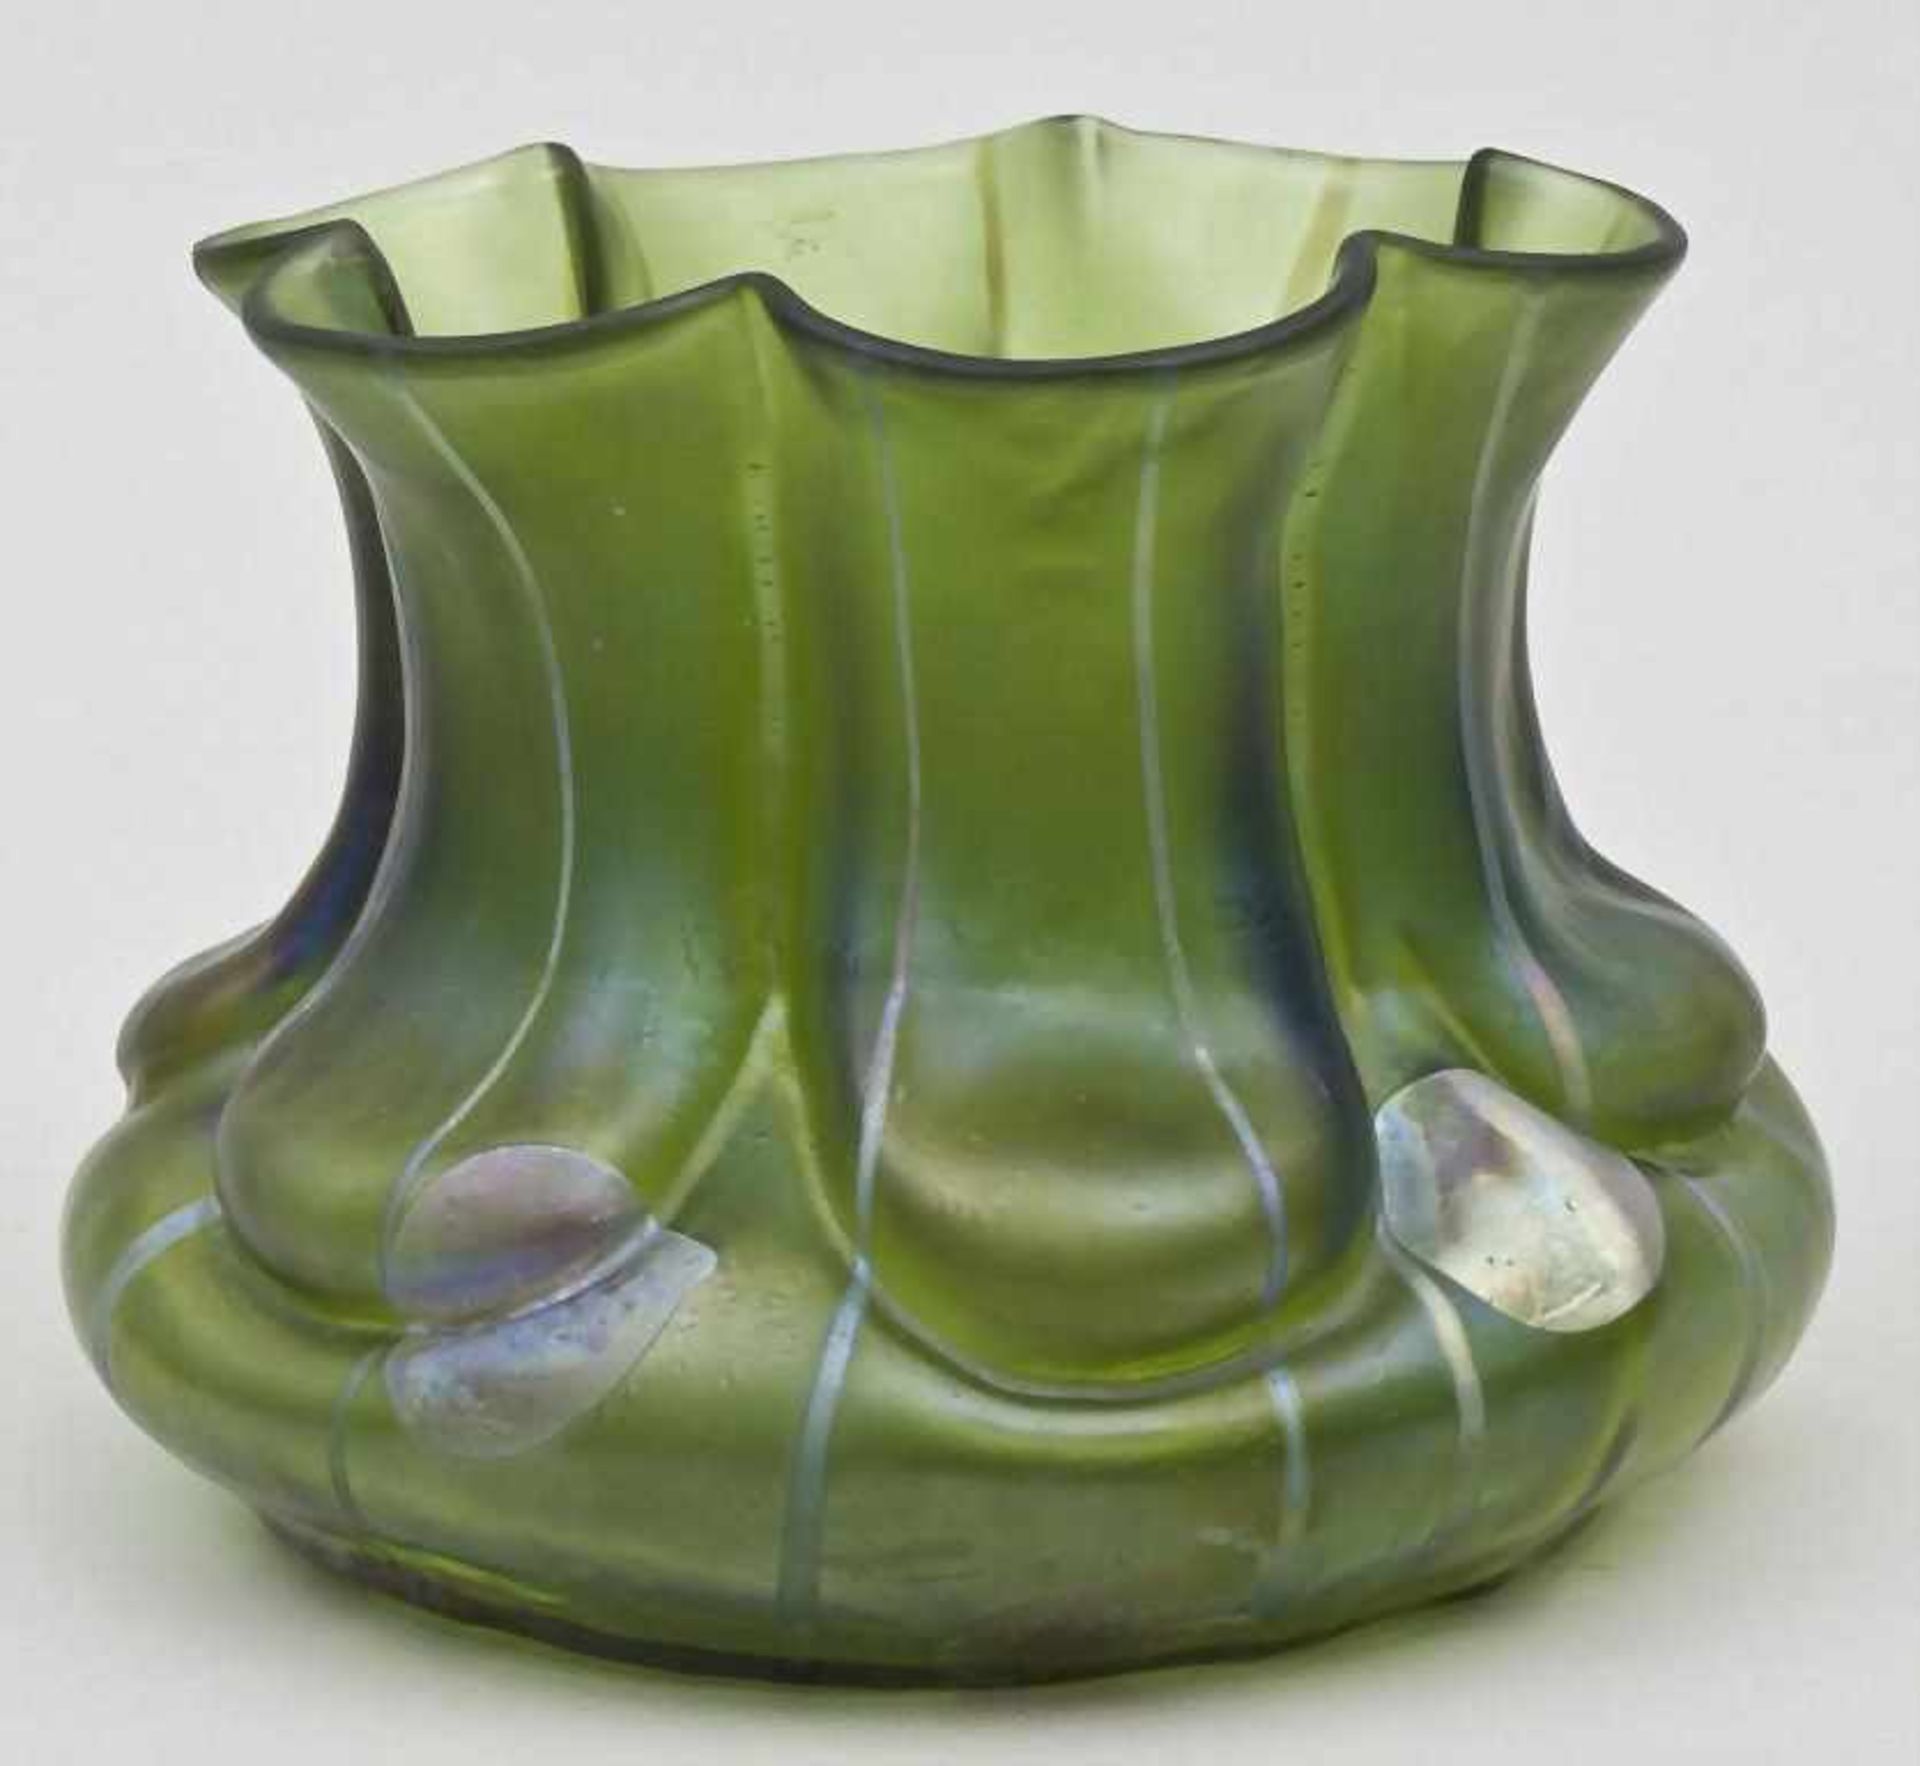 Jugendstil Vase 'Streifen und Flecken' / Art Nouveau Vase With Stripes and Spots, Wilhelm Kralik